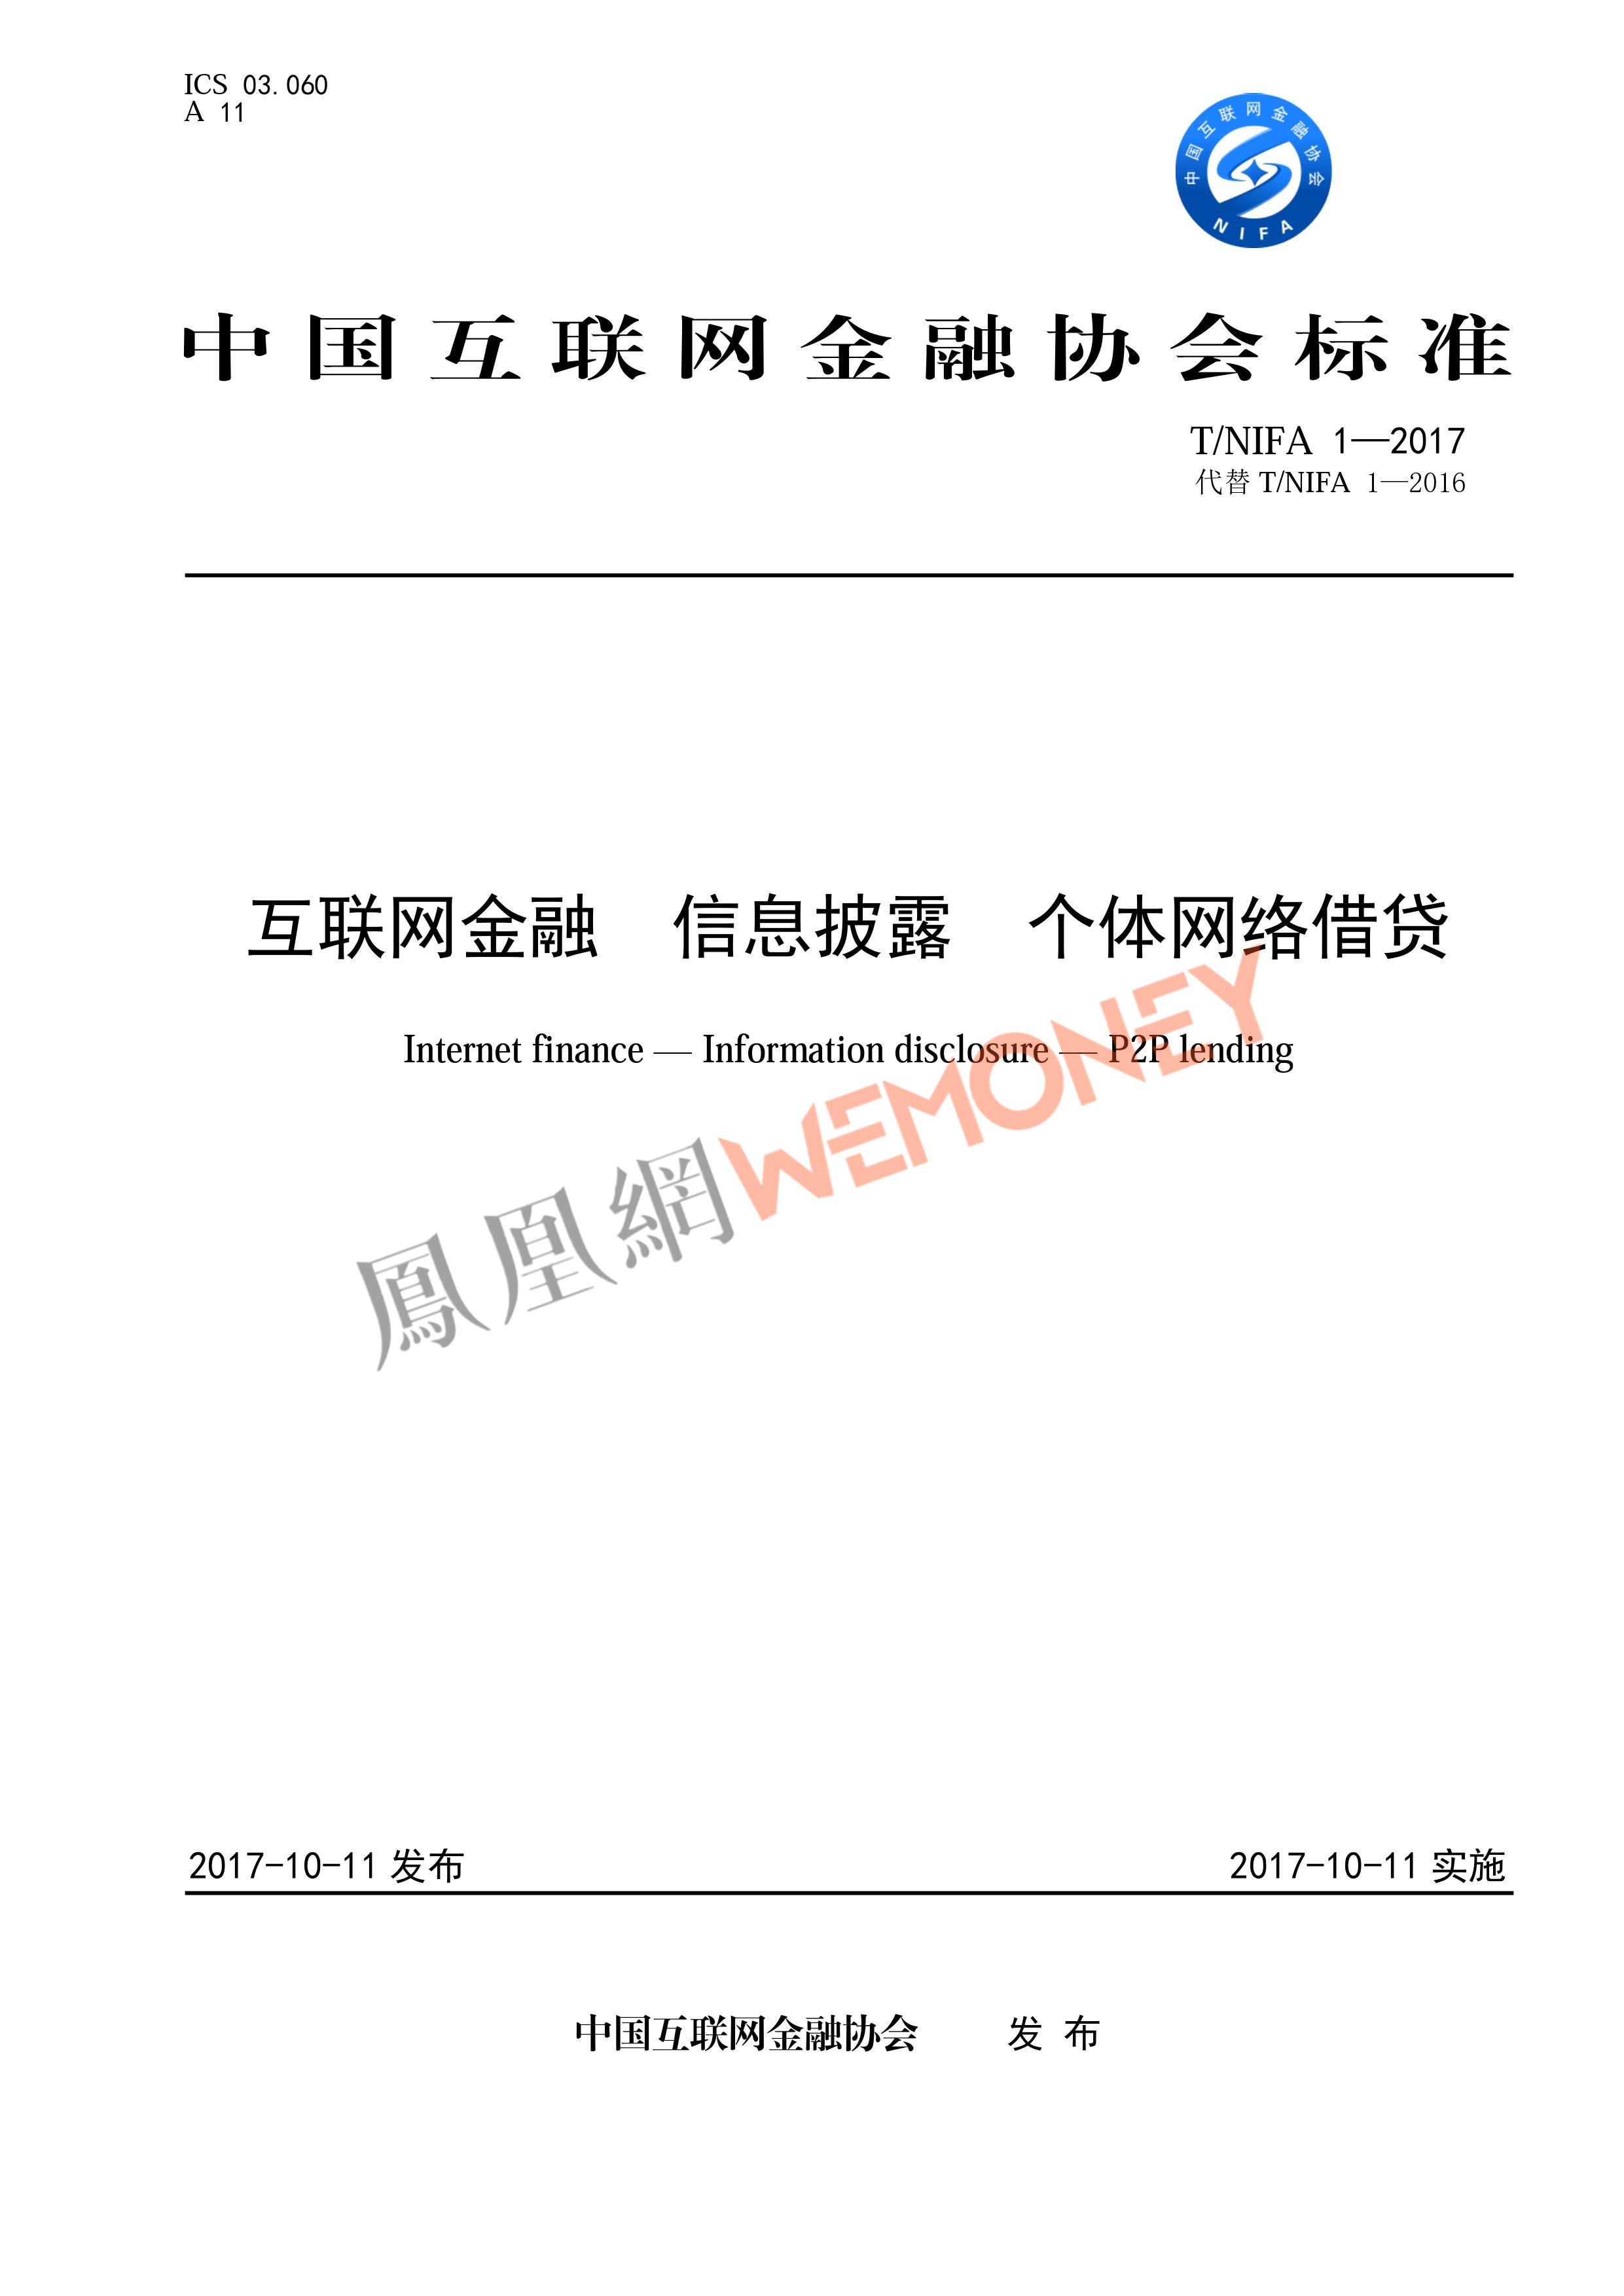 全文|中国互金协会发布个体网络借贷信息披露